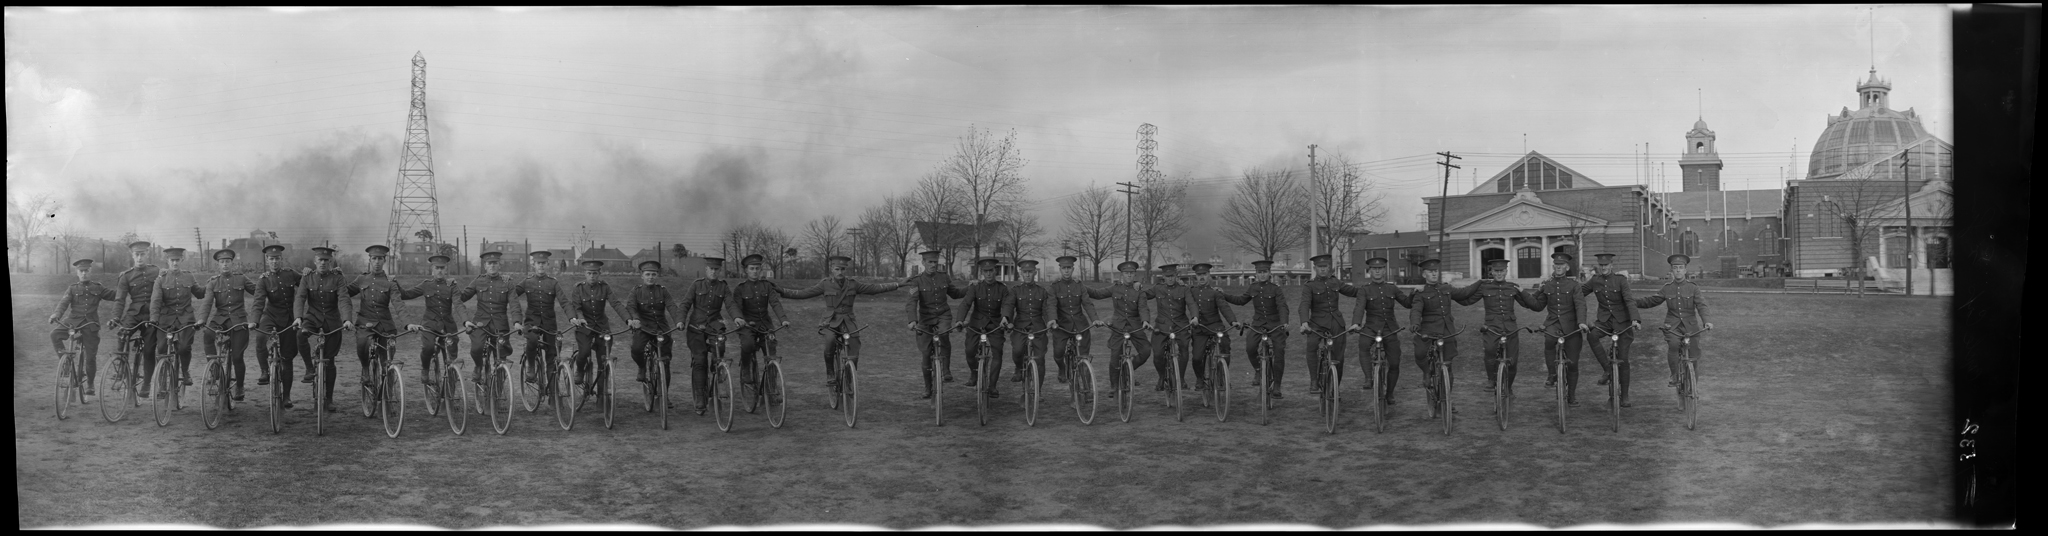 Photographie panoramique d’un régiment d’infanterie à vélo.